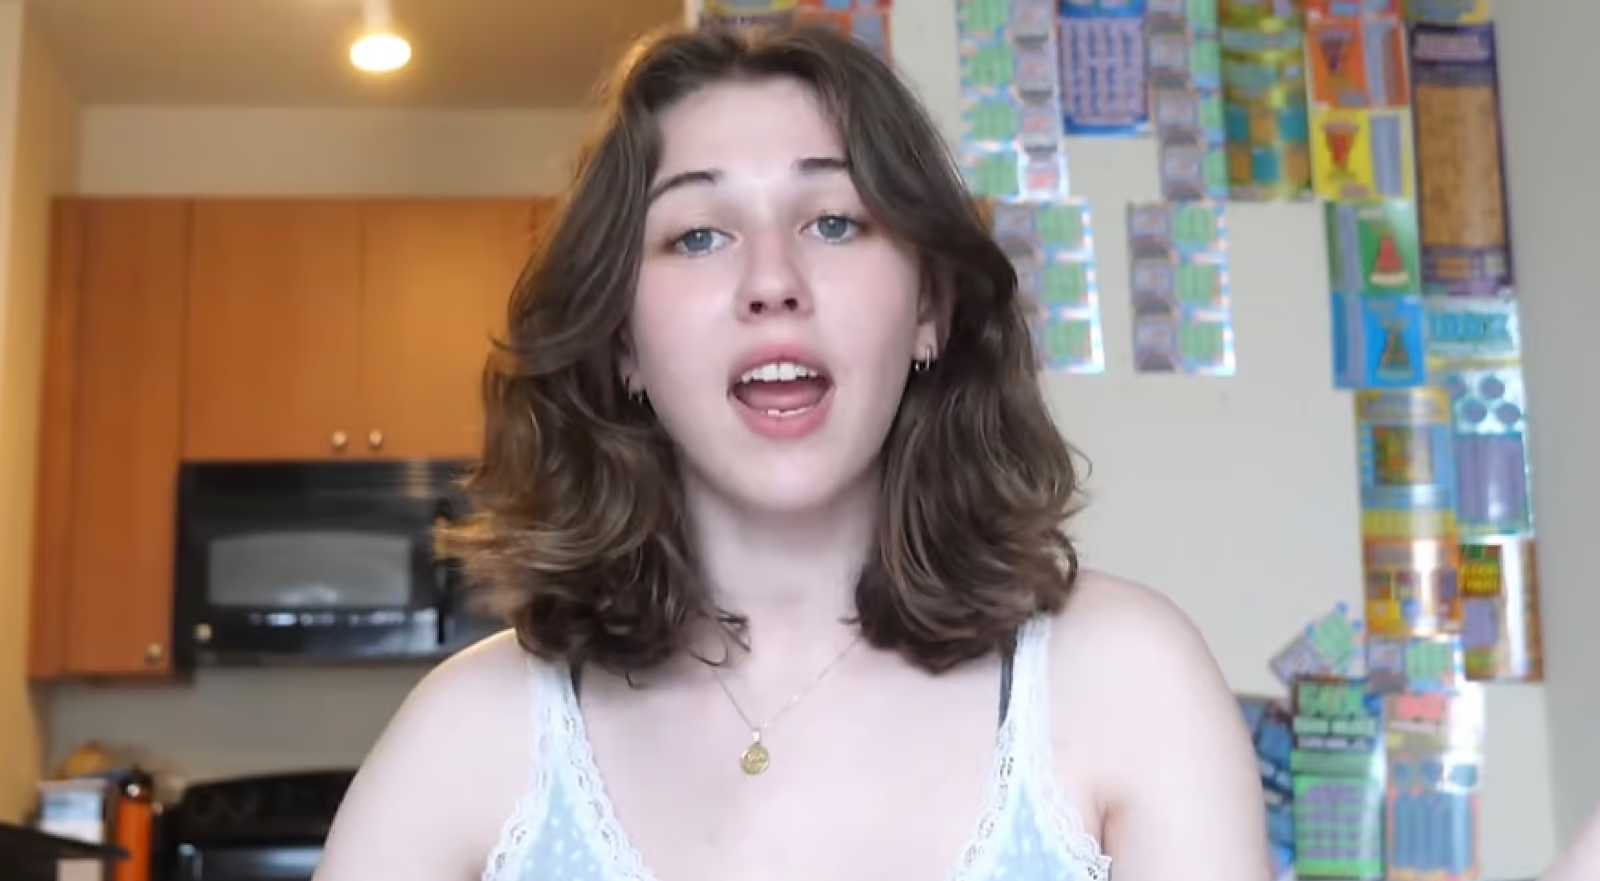 YouTuber Caroline Konstnar bị chỉ trích vì giả vờ mang thai để lùa fan đăng ký Patreon